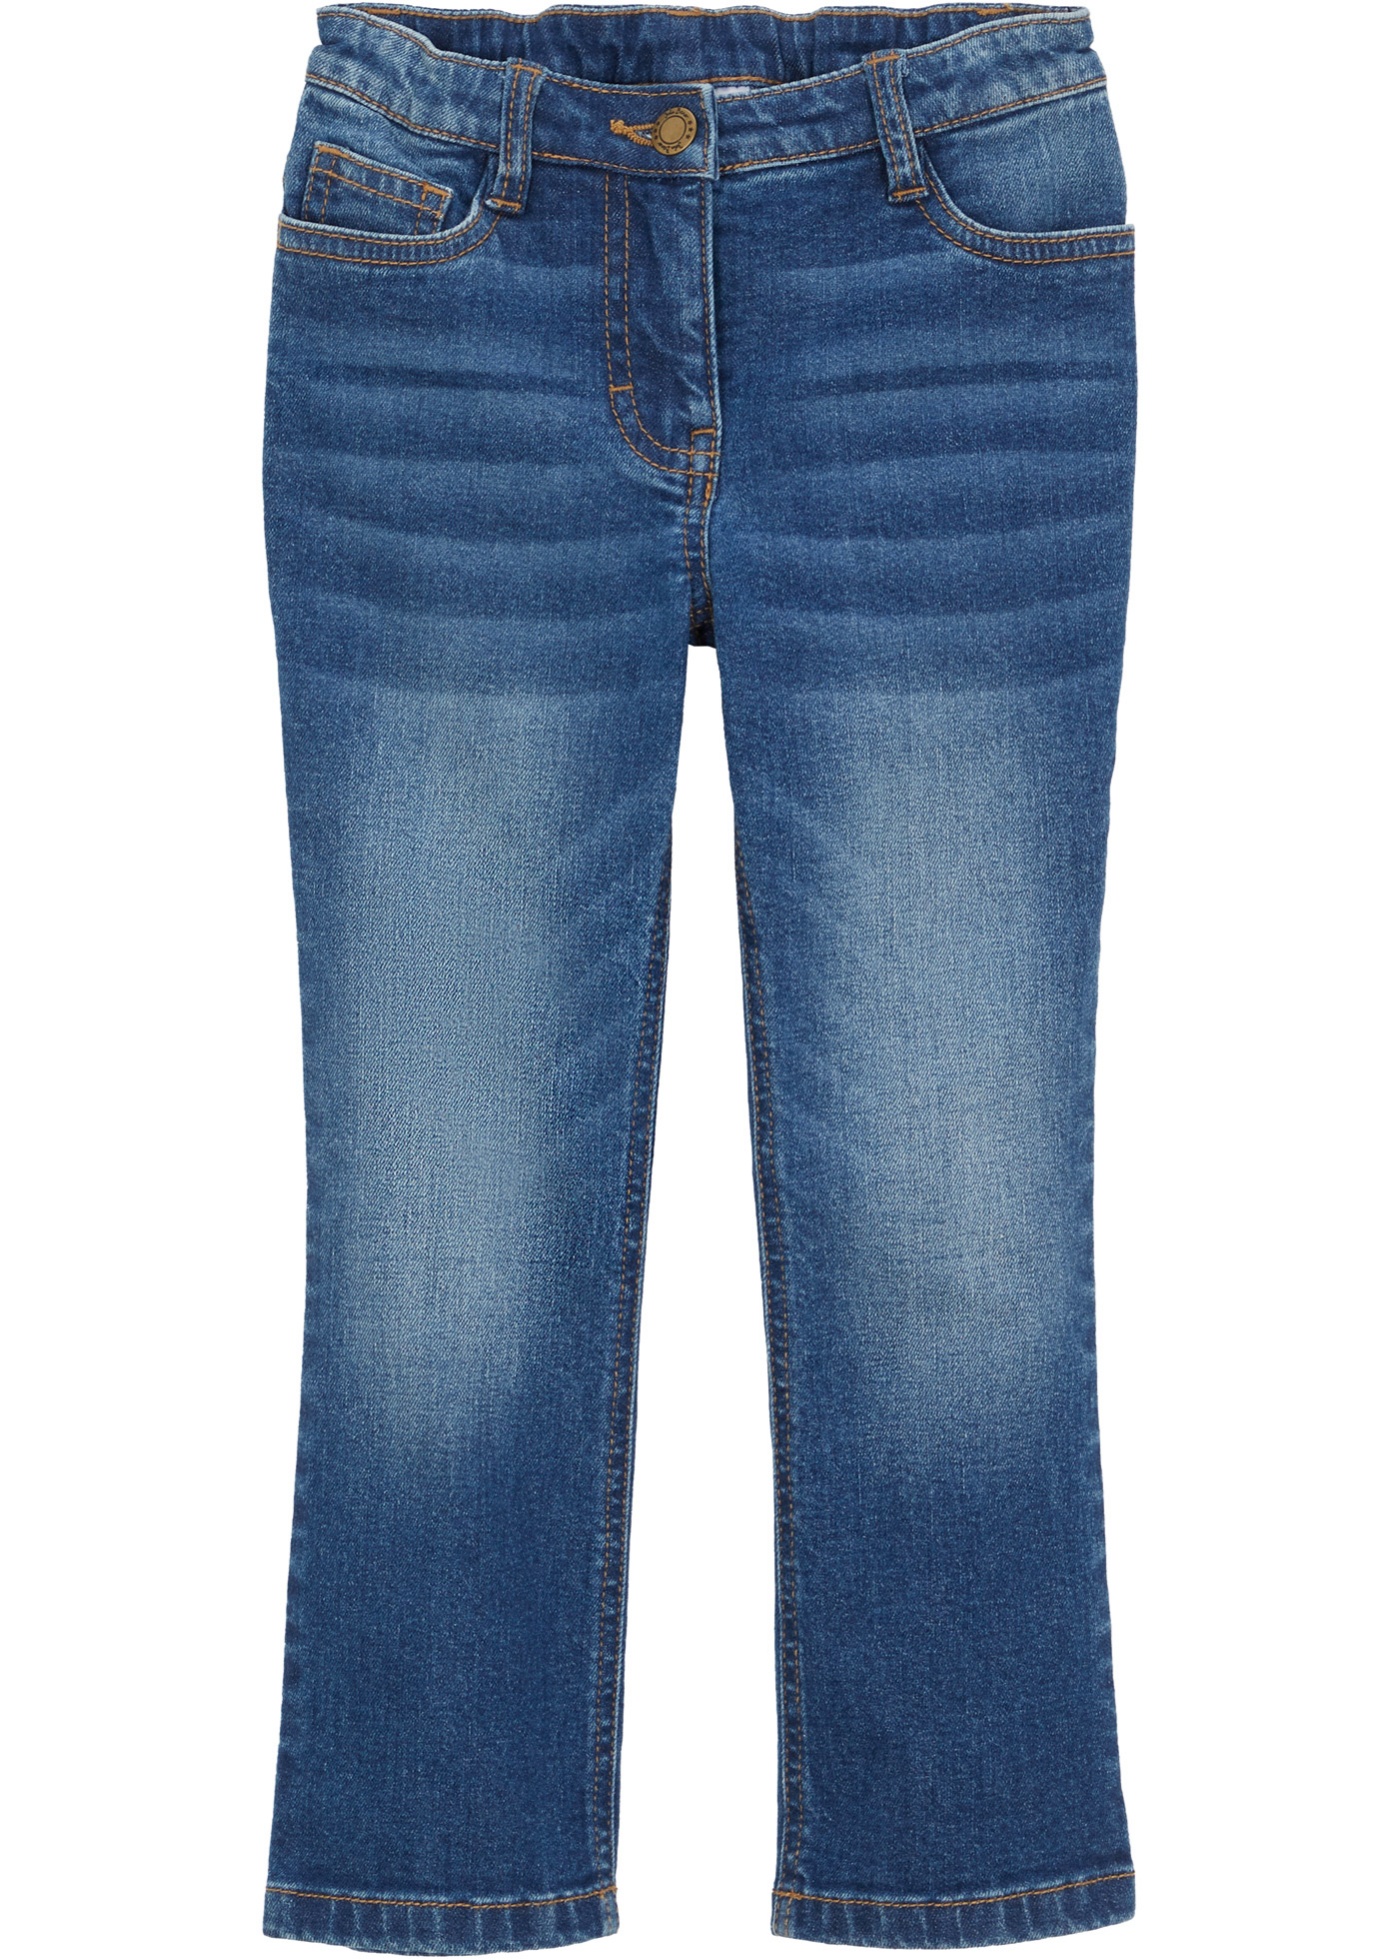 Dievčenské džínsy, rozšírené, Positive Denim 1 Fabric